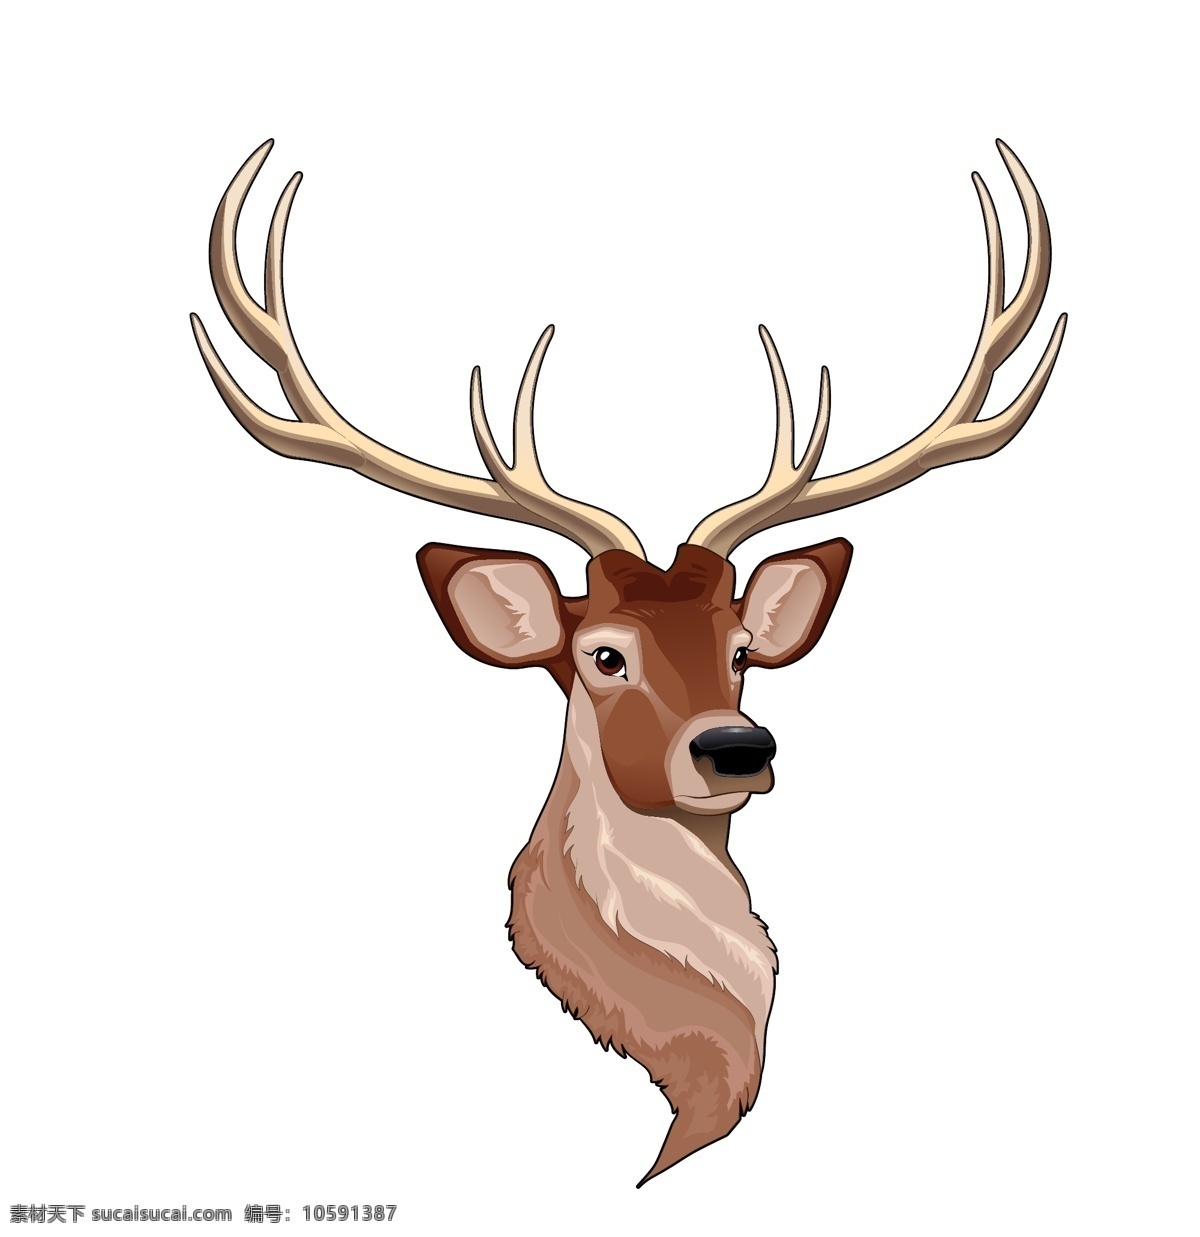 麋鹿 梅花鹿 小鹿 鹿 卡通 森林动物 ai矢量图 装饰插画 印刷背景图 设计素材 矢量图